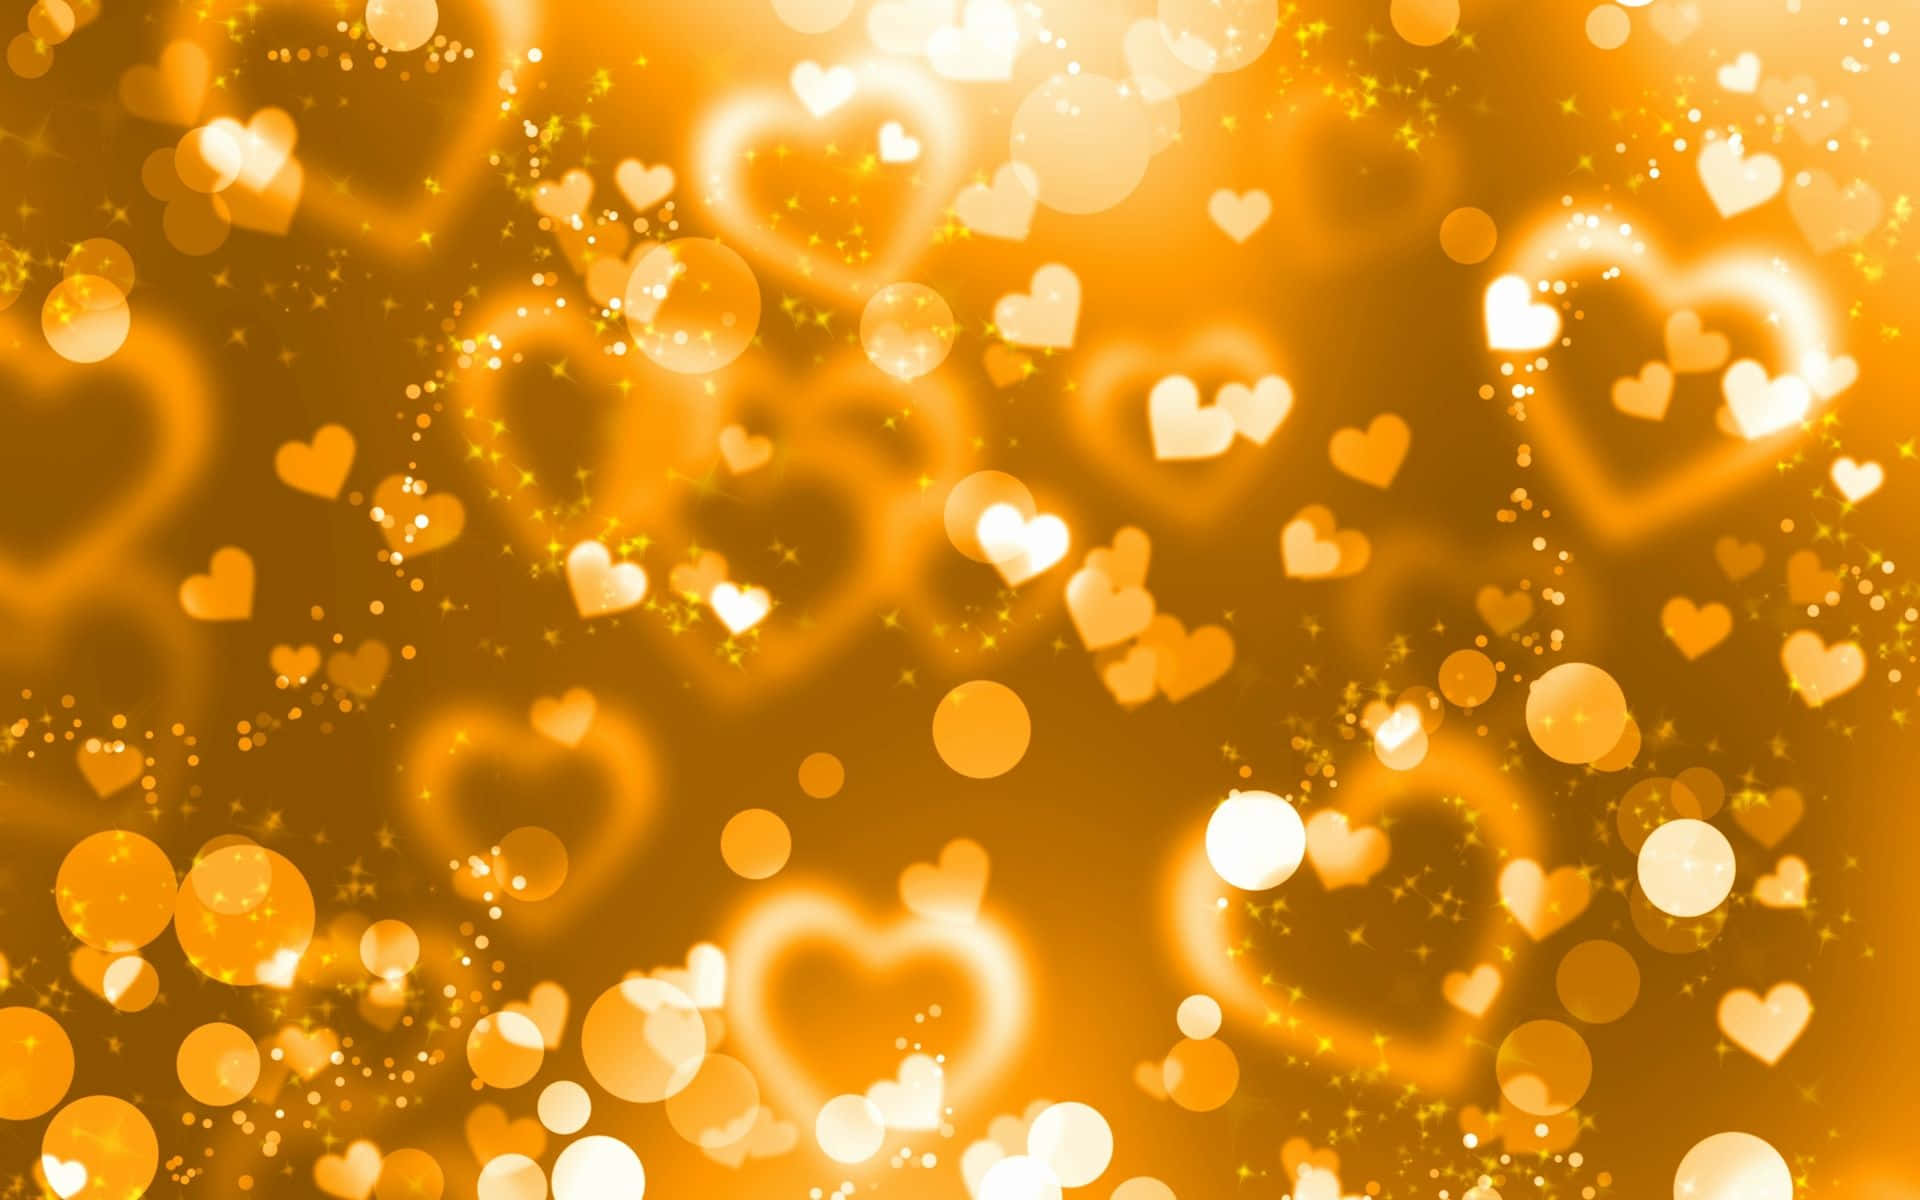 gold glitter heart wallpaper